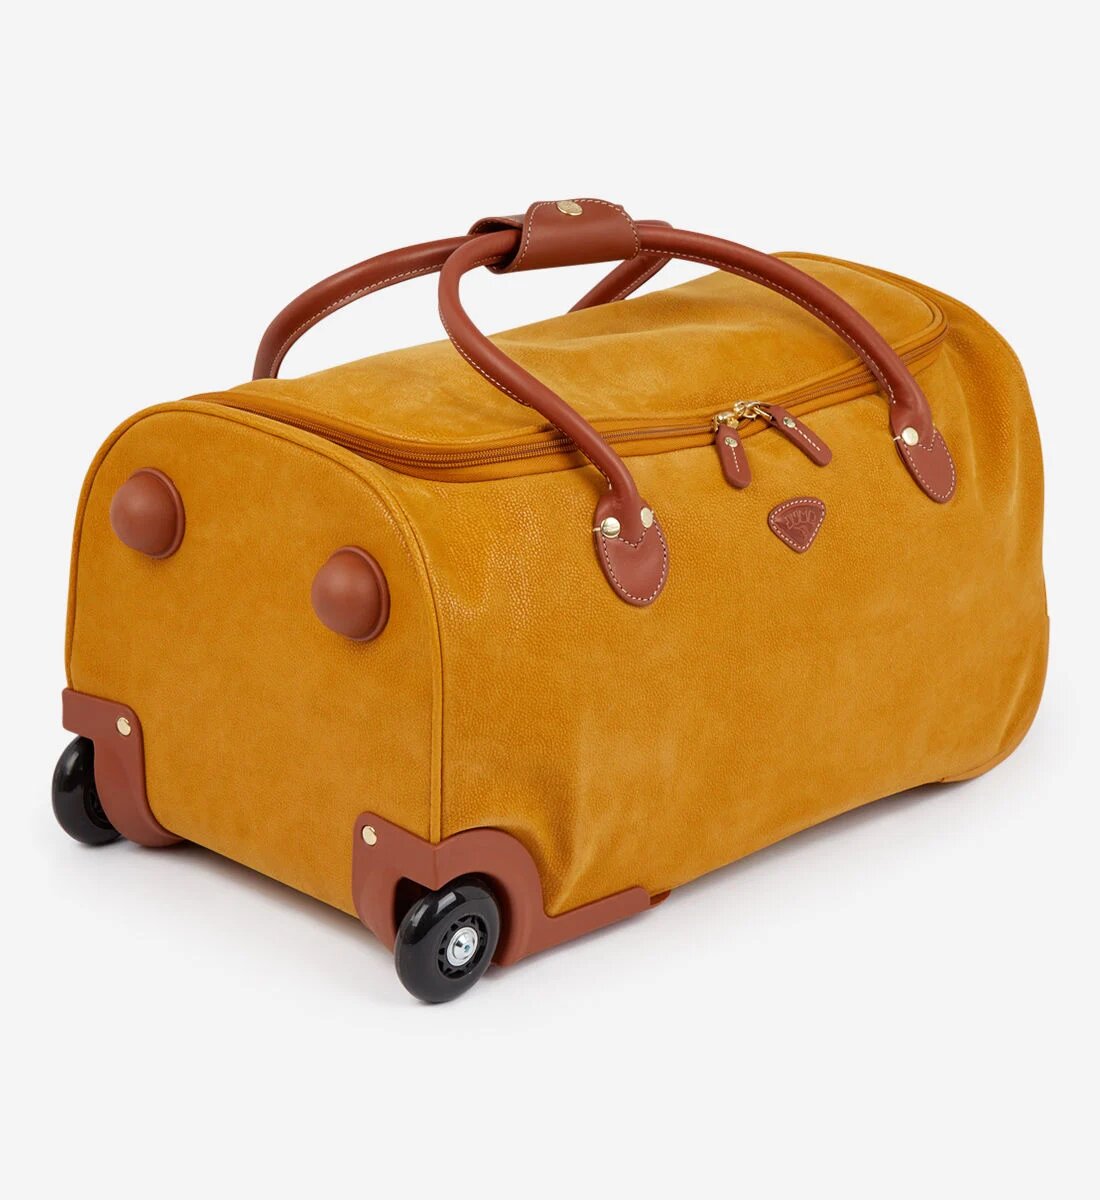 Sac de voyage valise à roulettes Transall 120l - Voyages et bagages - Inuka